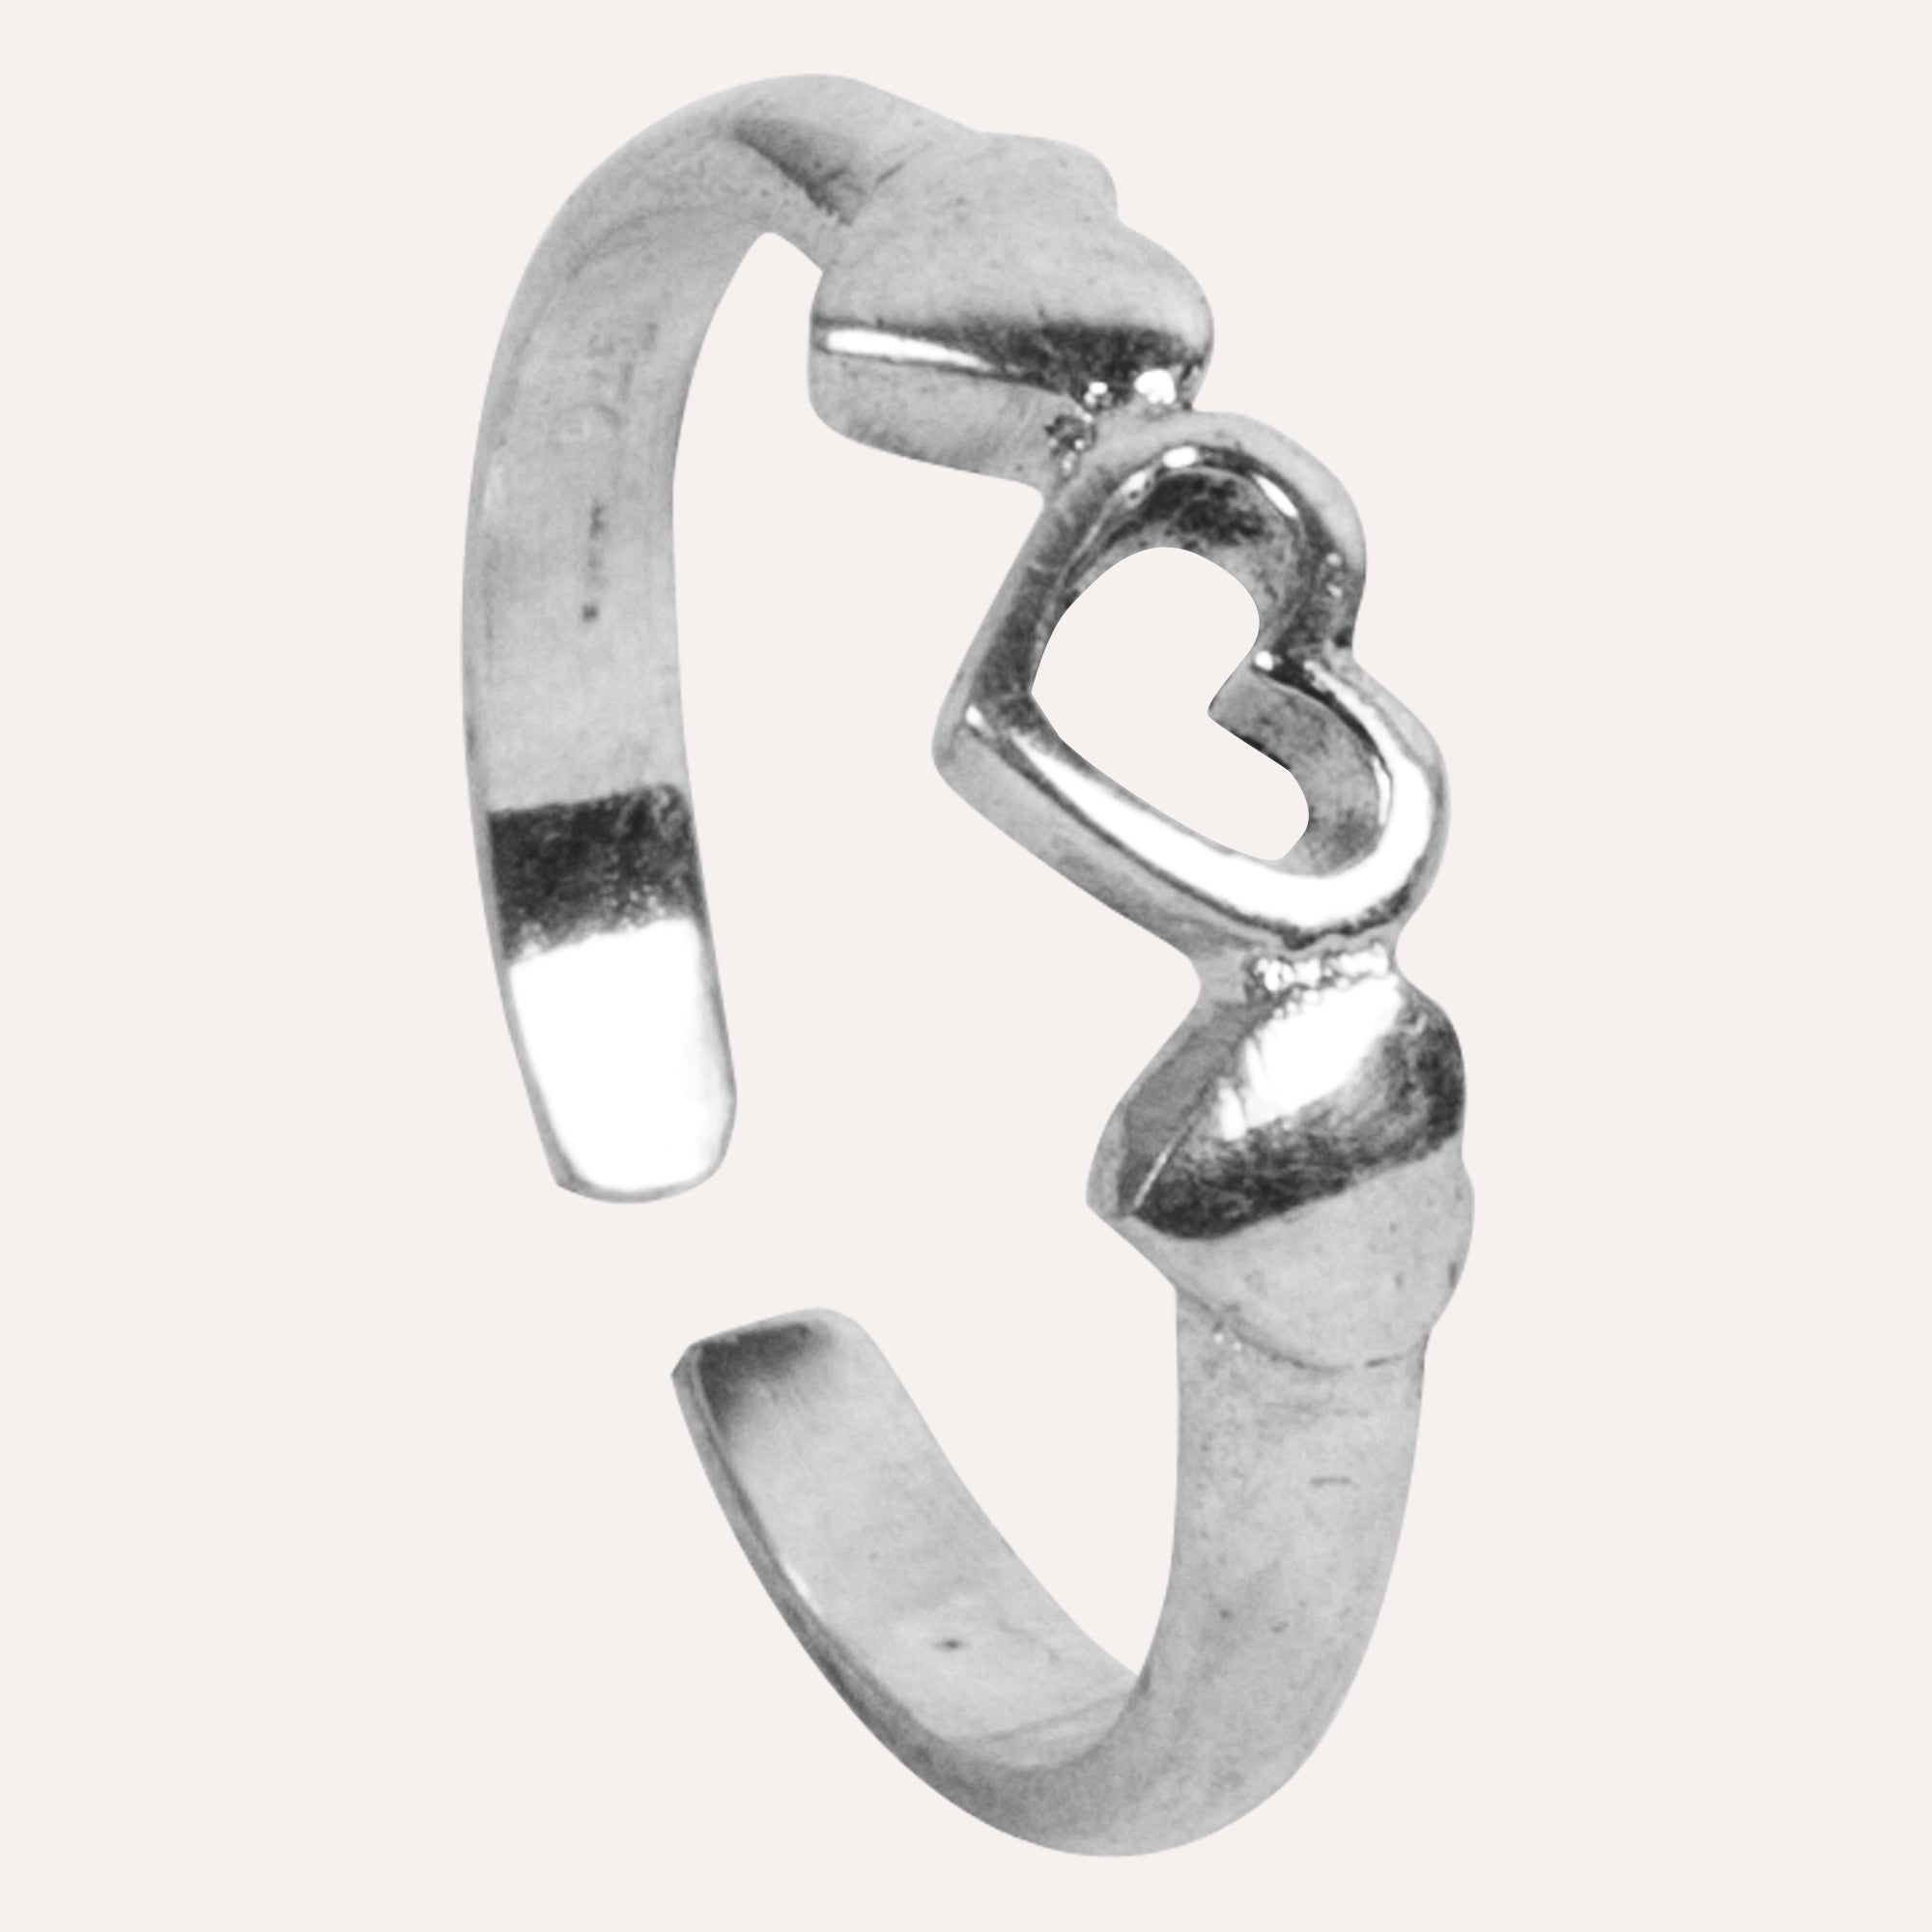 Mnshaa Sterling Silver Ring Heart Rock Design Handmade Adjustable